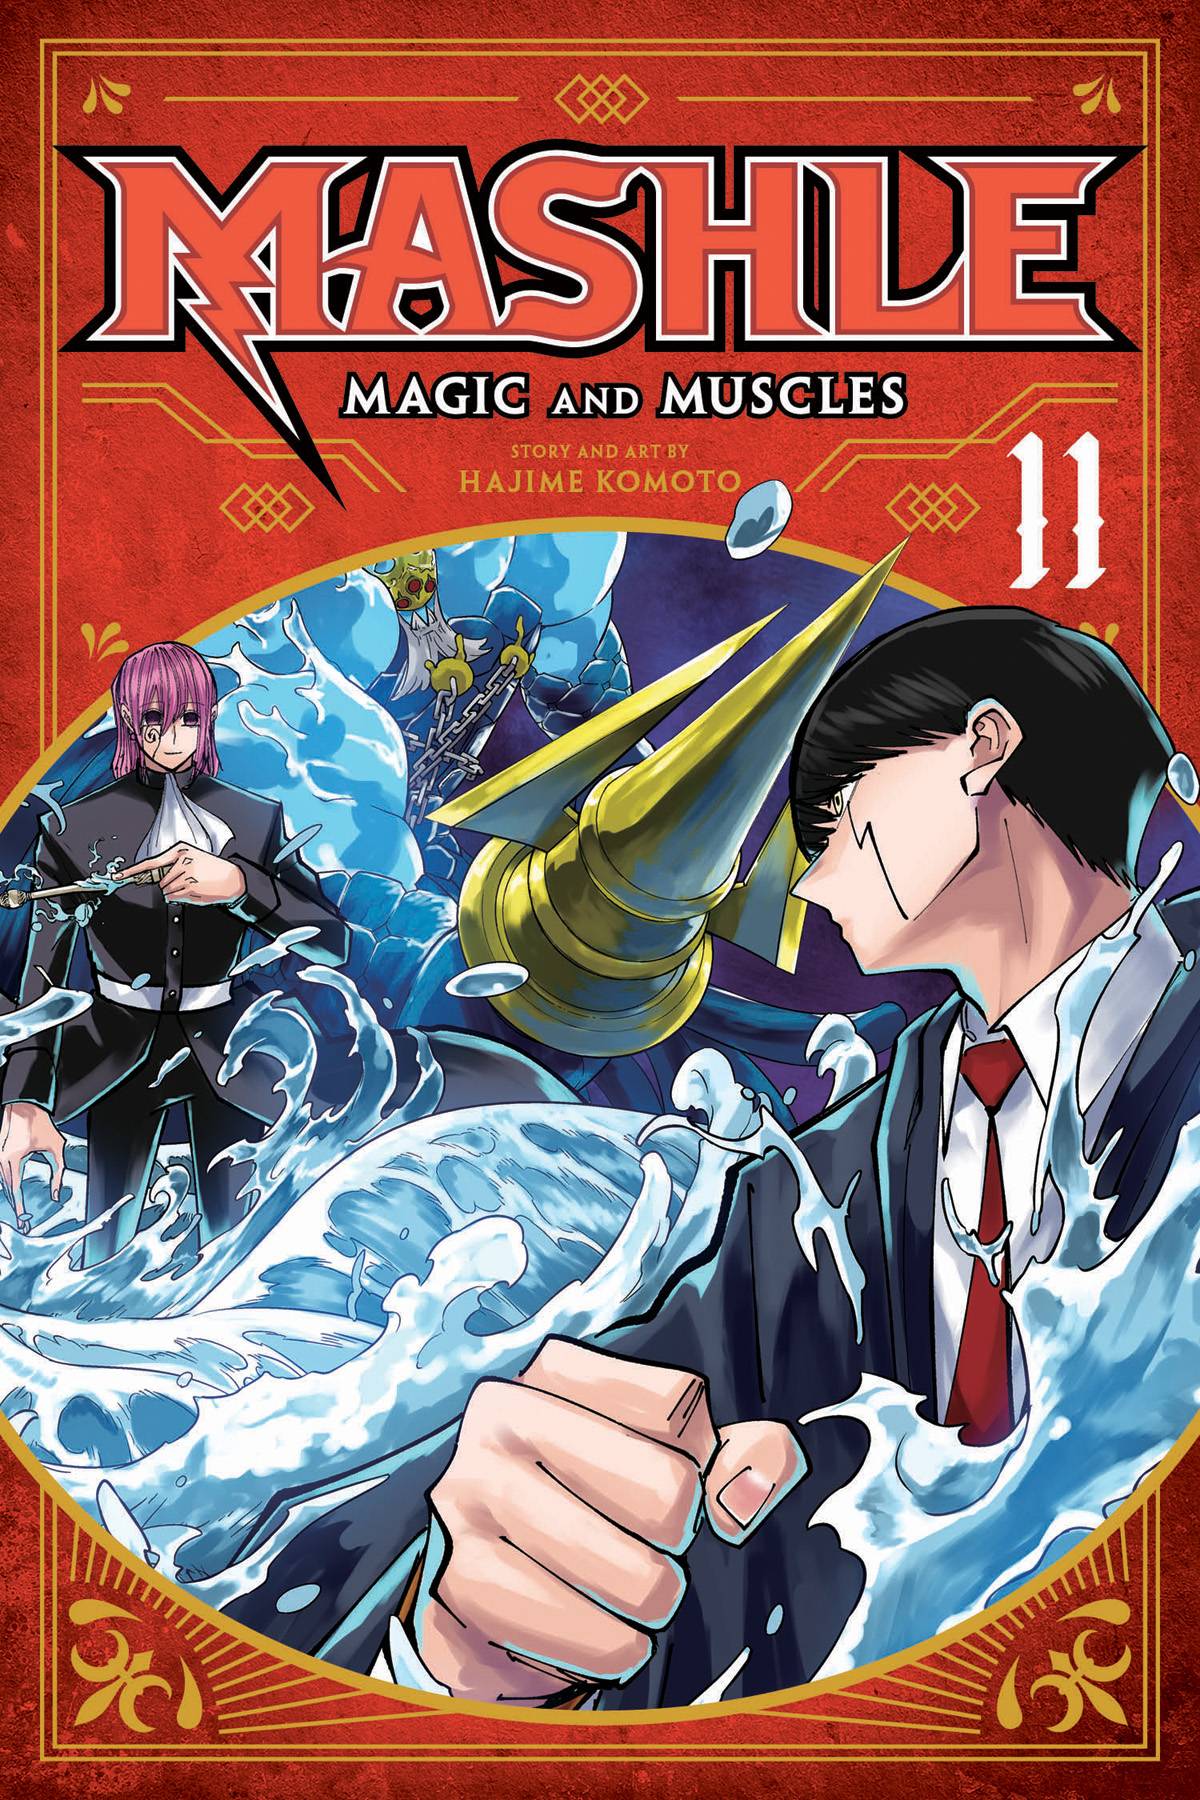 Read MASHLE Manga English [New Chapters] Online Free - MangaClash